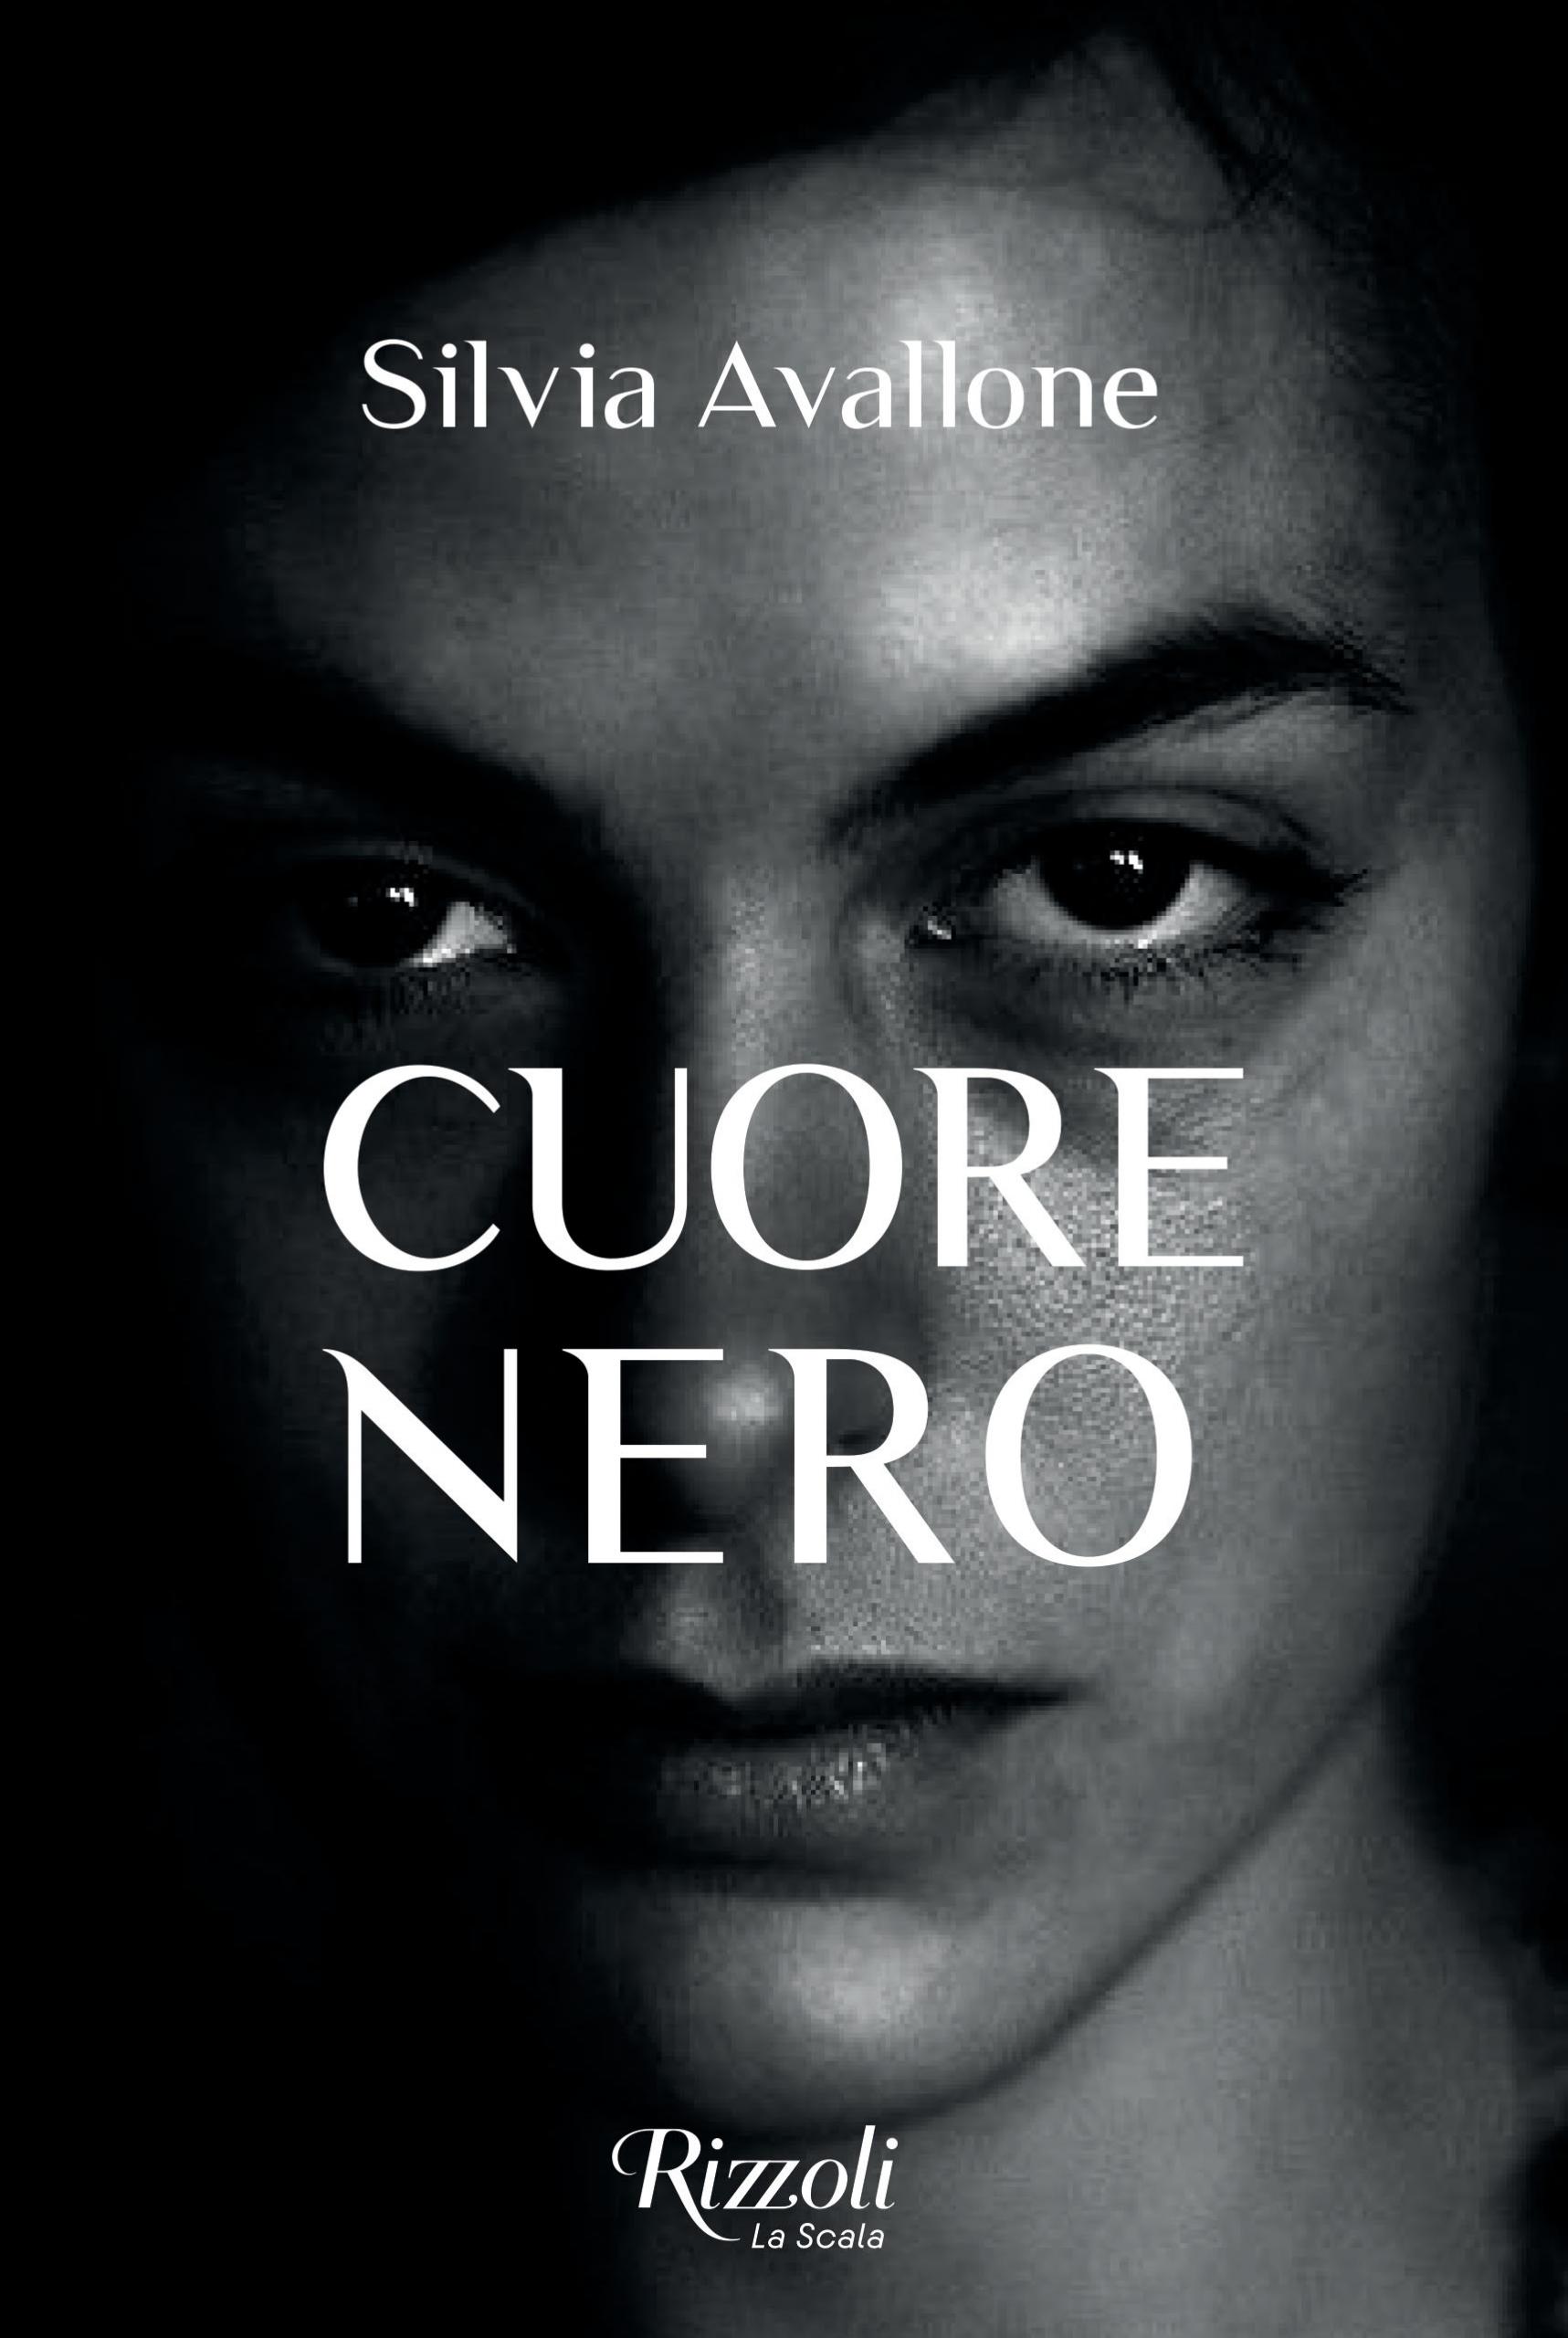 Cuore nero di Silvia Avallone, una storia di condanna e salvezza 